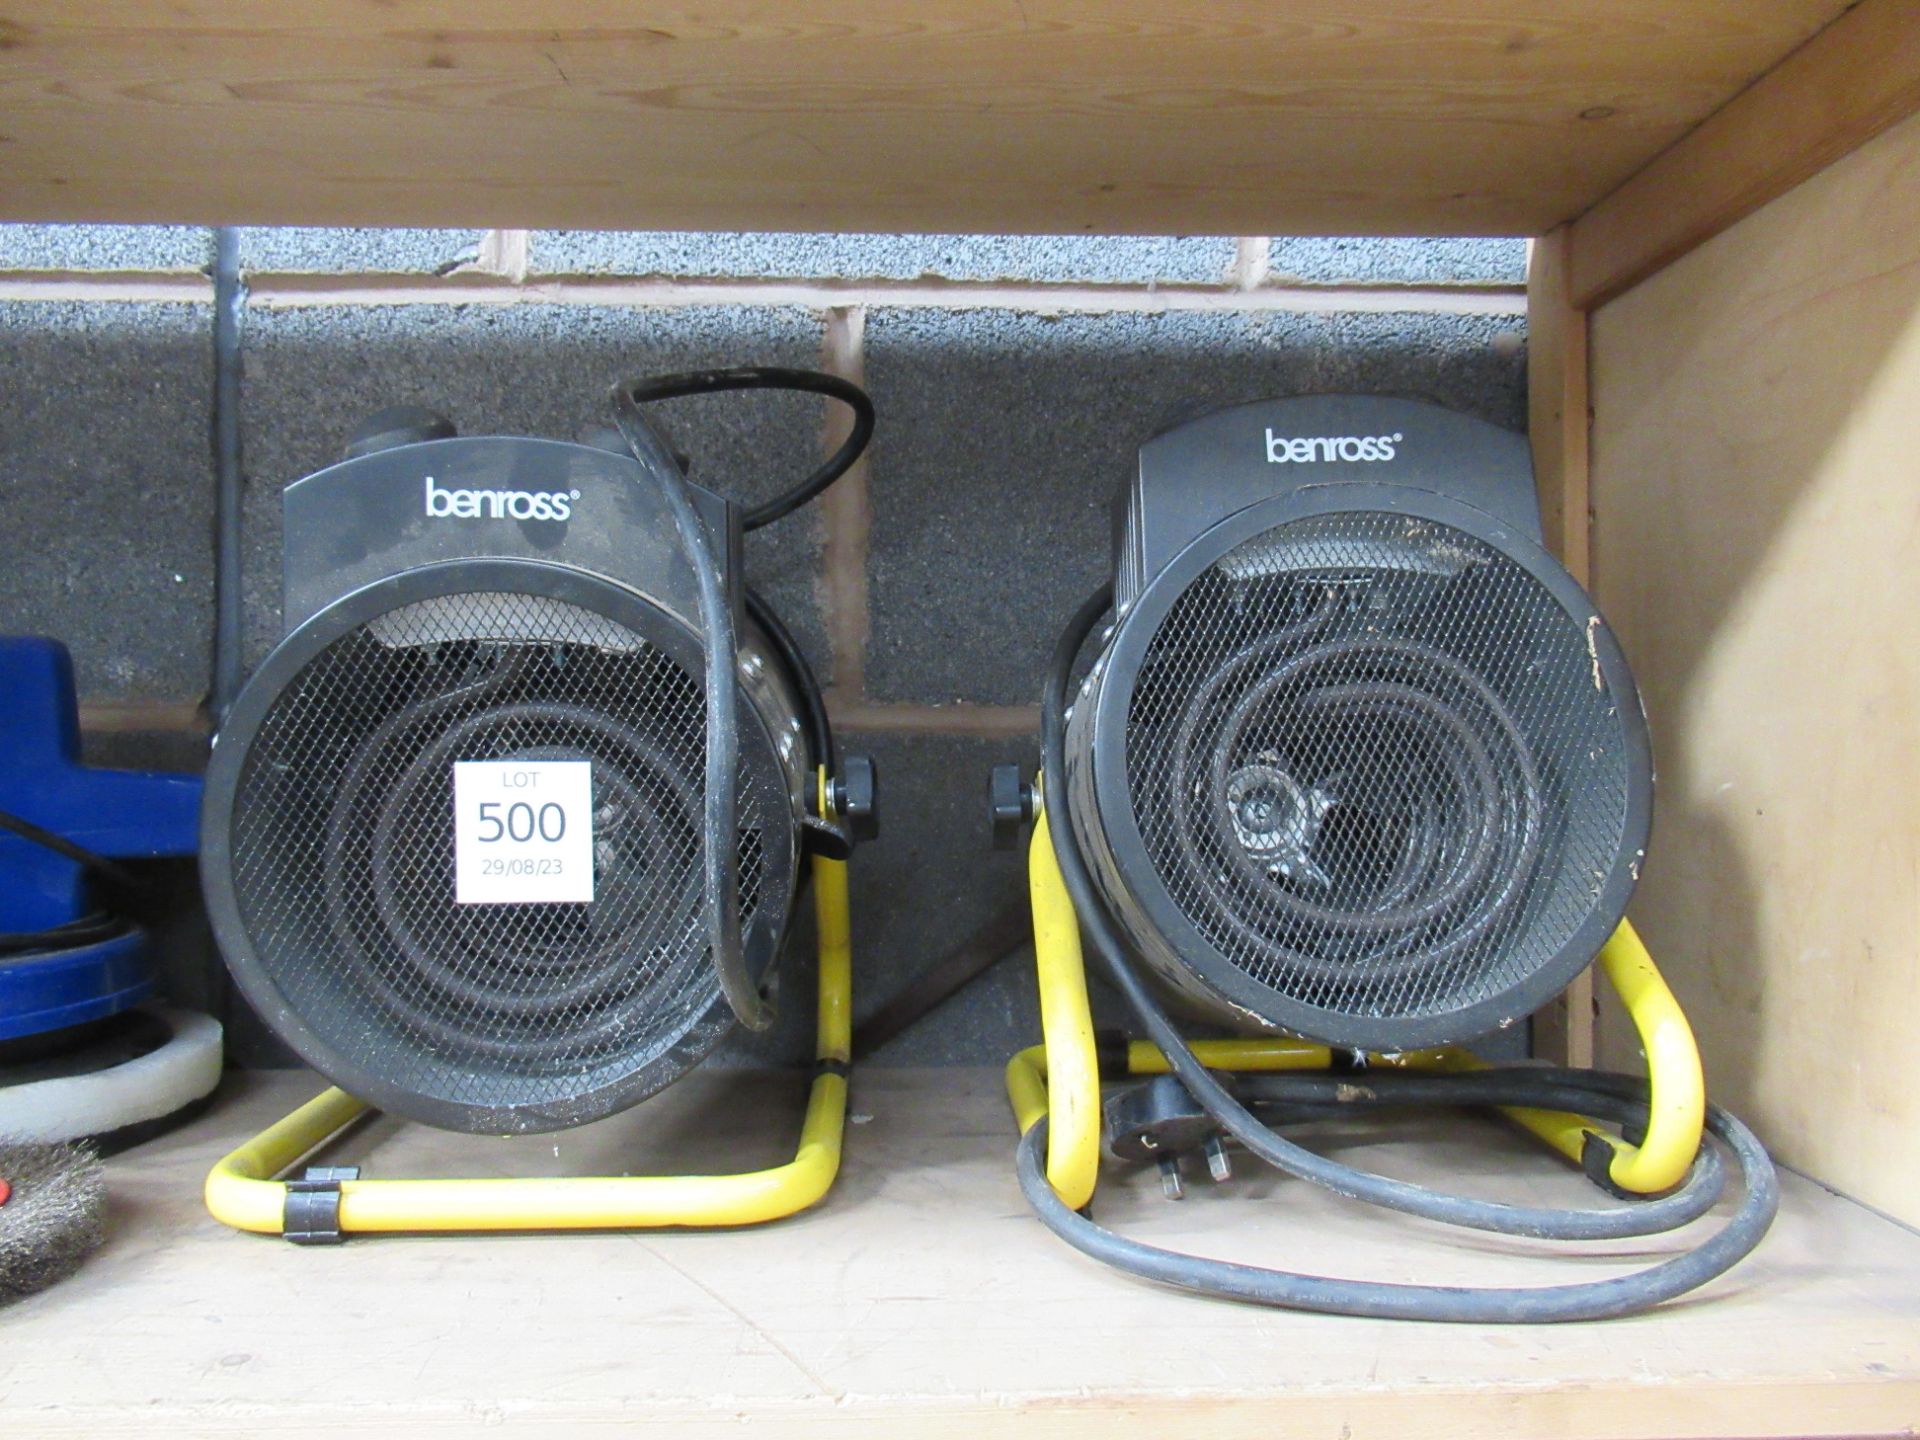 A 240V Silverline Bench Grinder/Polisher, 2x Benross 240V heaters and a 240V car polisher - Image 2 of 4